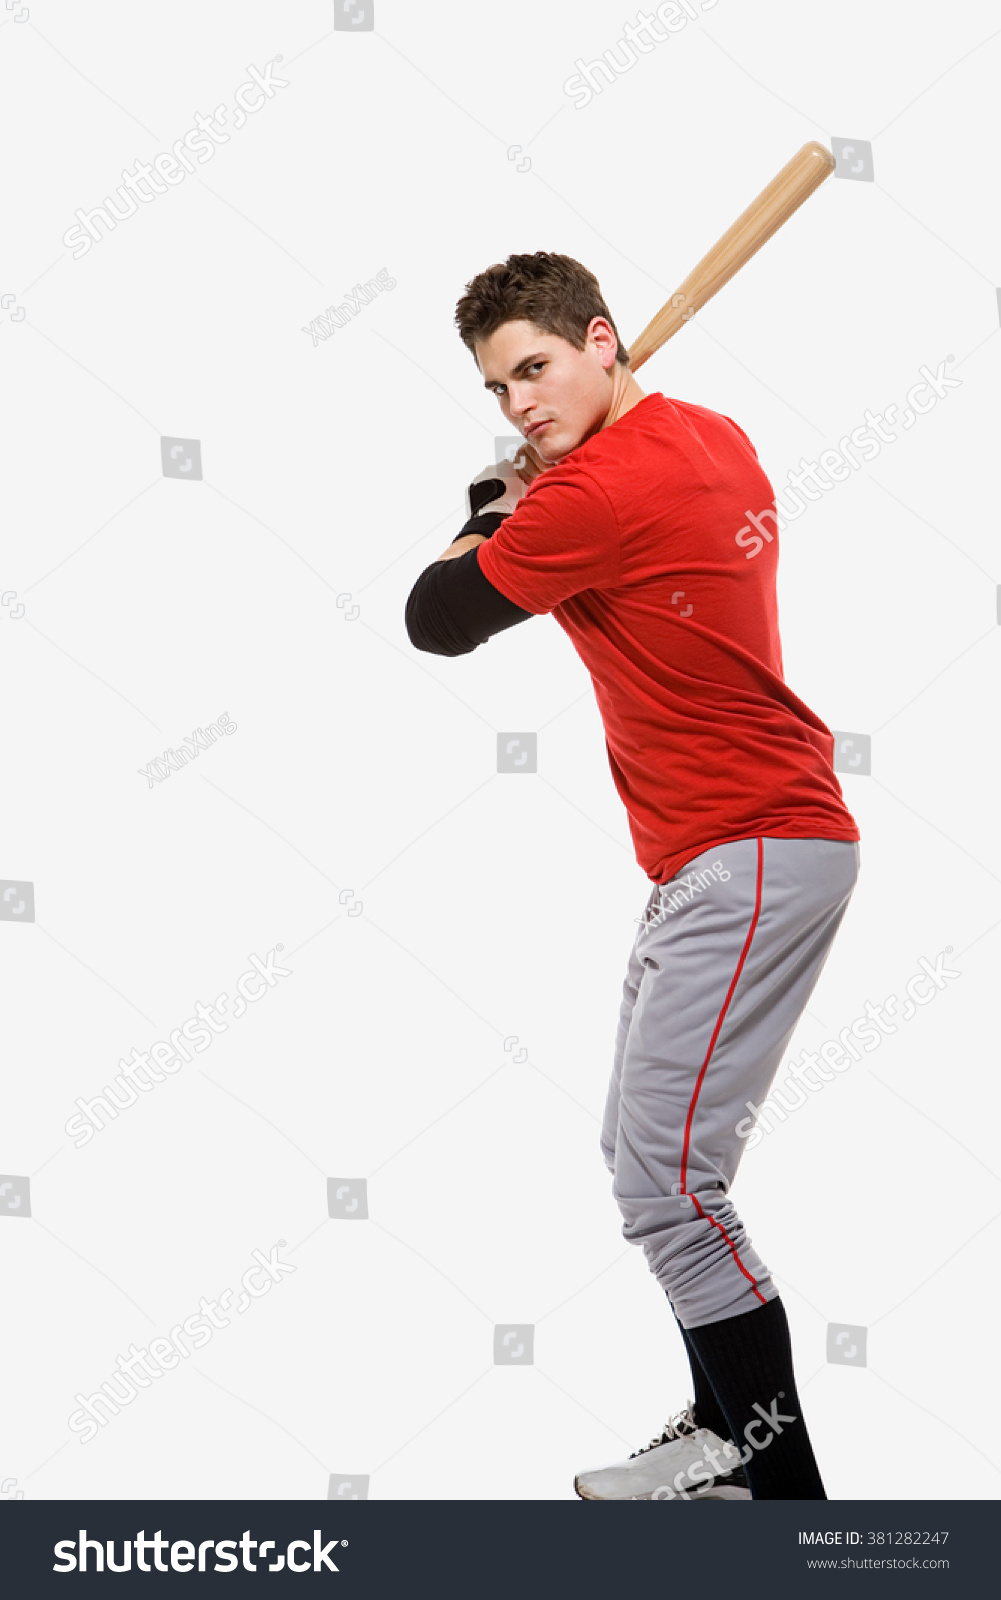 Baseball player #381282247